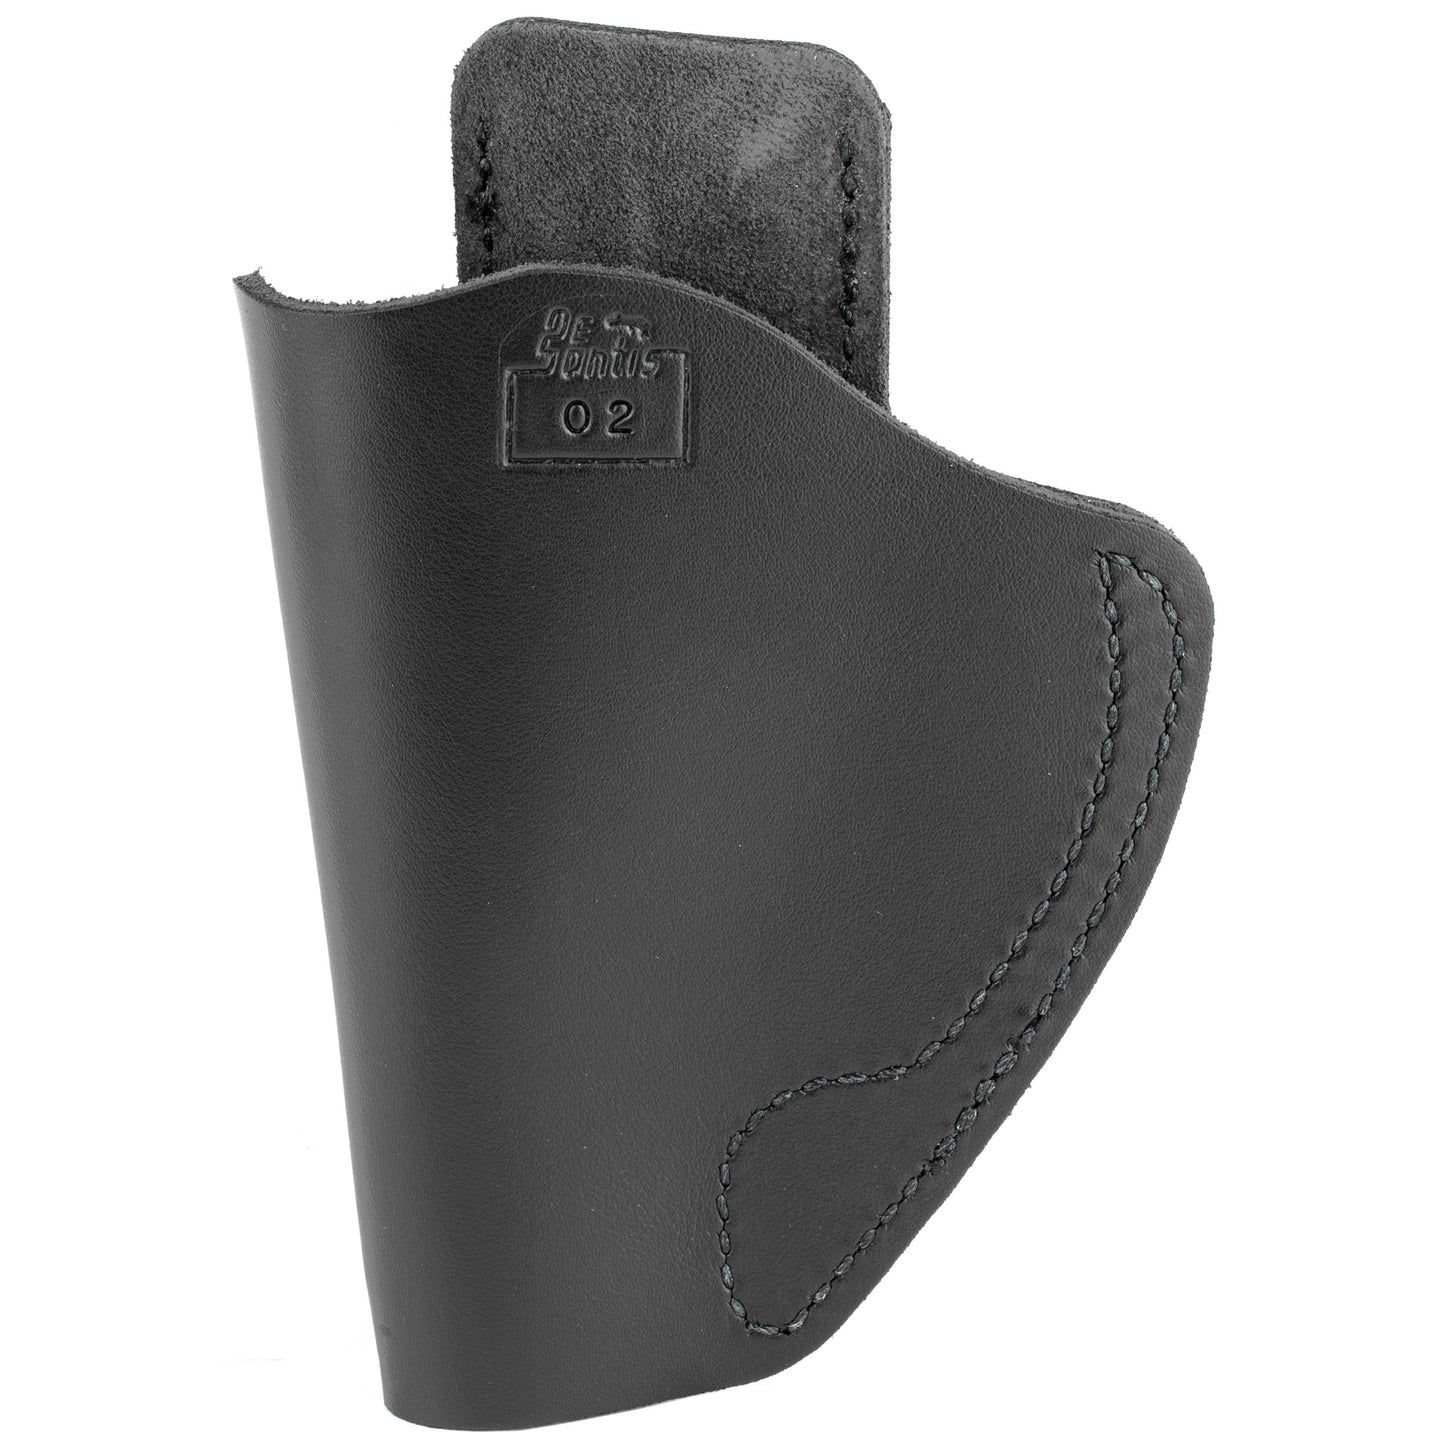 DeSantis Insider IWB Holster Fits S&W J-Frame Right Hand Black Leather 031BA02Z0